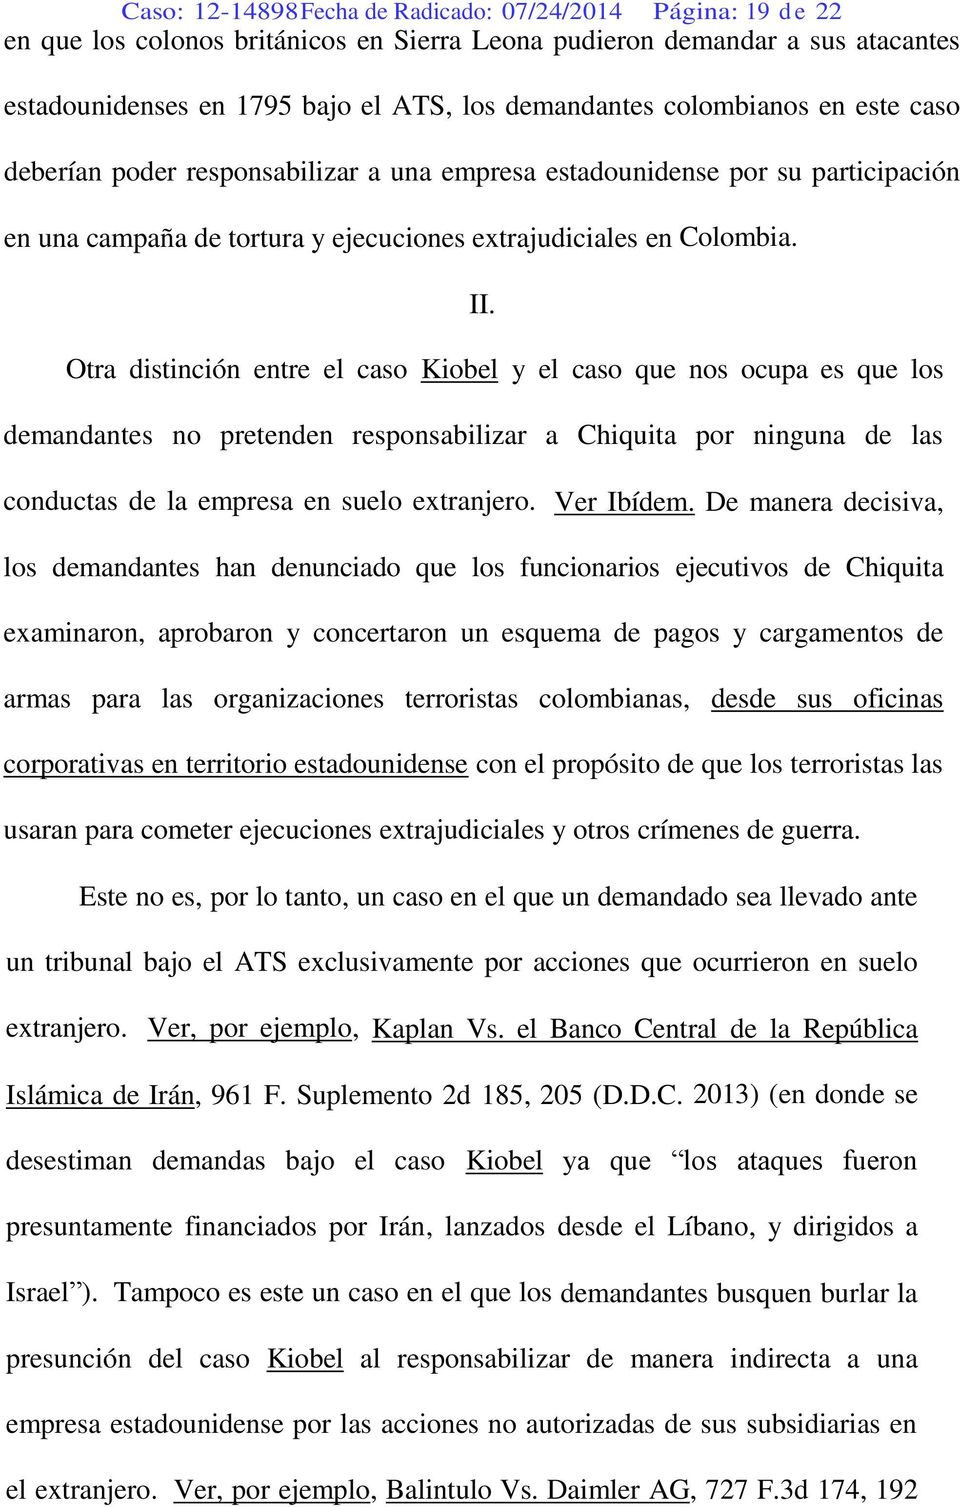 Otra distinción entre el caso Kiobel y el caso que nos ocupa es que los demandantes no pretenden responsabilizar a Chiquita por ninguna de las conductas de la empresa en suelo extranjero. Ver Ibídem.